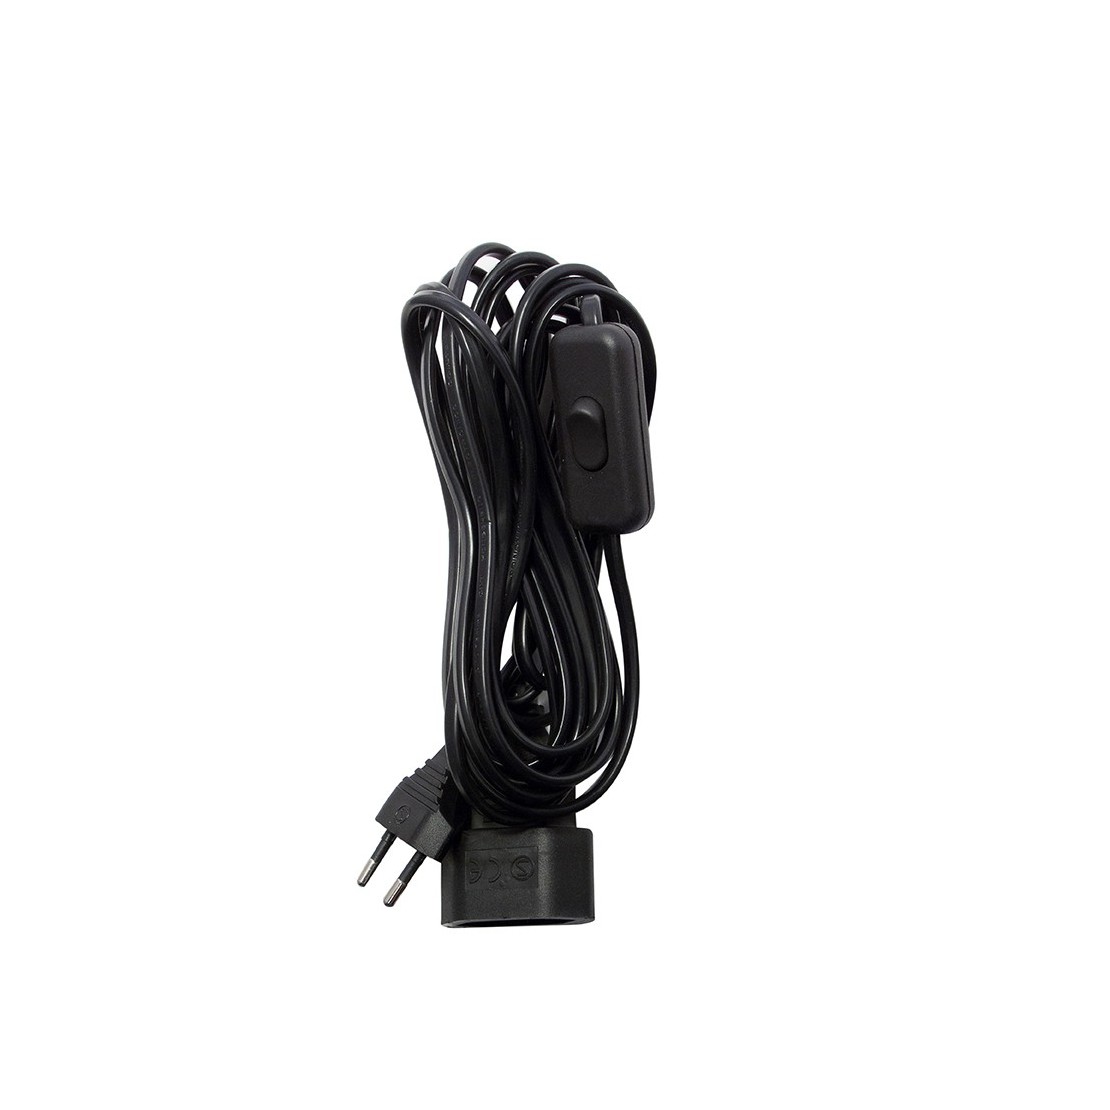 Extensão eléctrica 2,4m fio 2x0,75mm² preto, ficha Inglesa (UK) e  interruptor de mão pretos